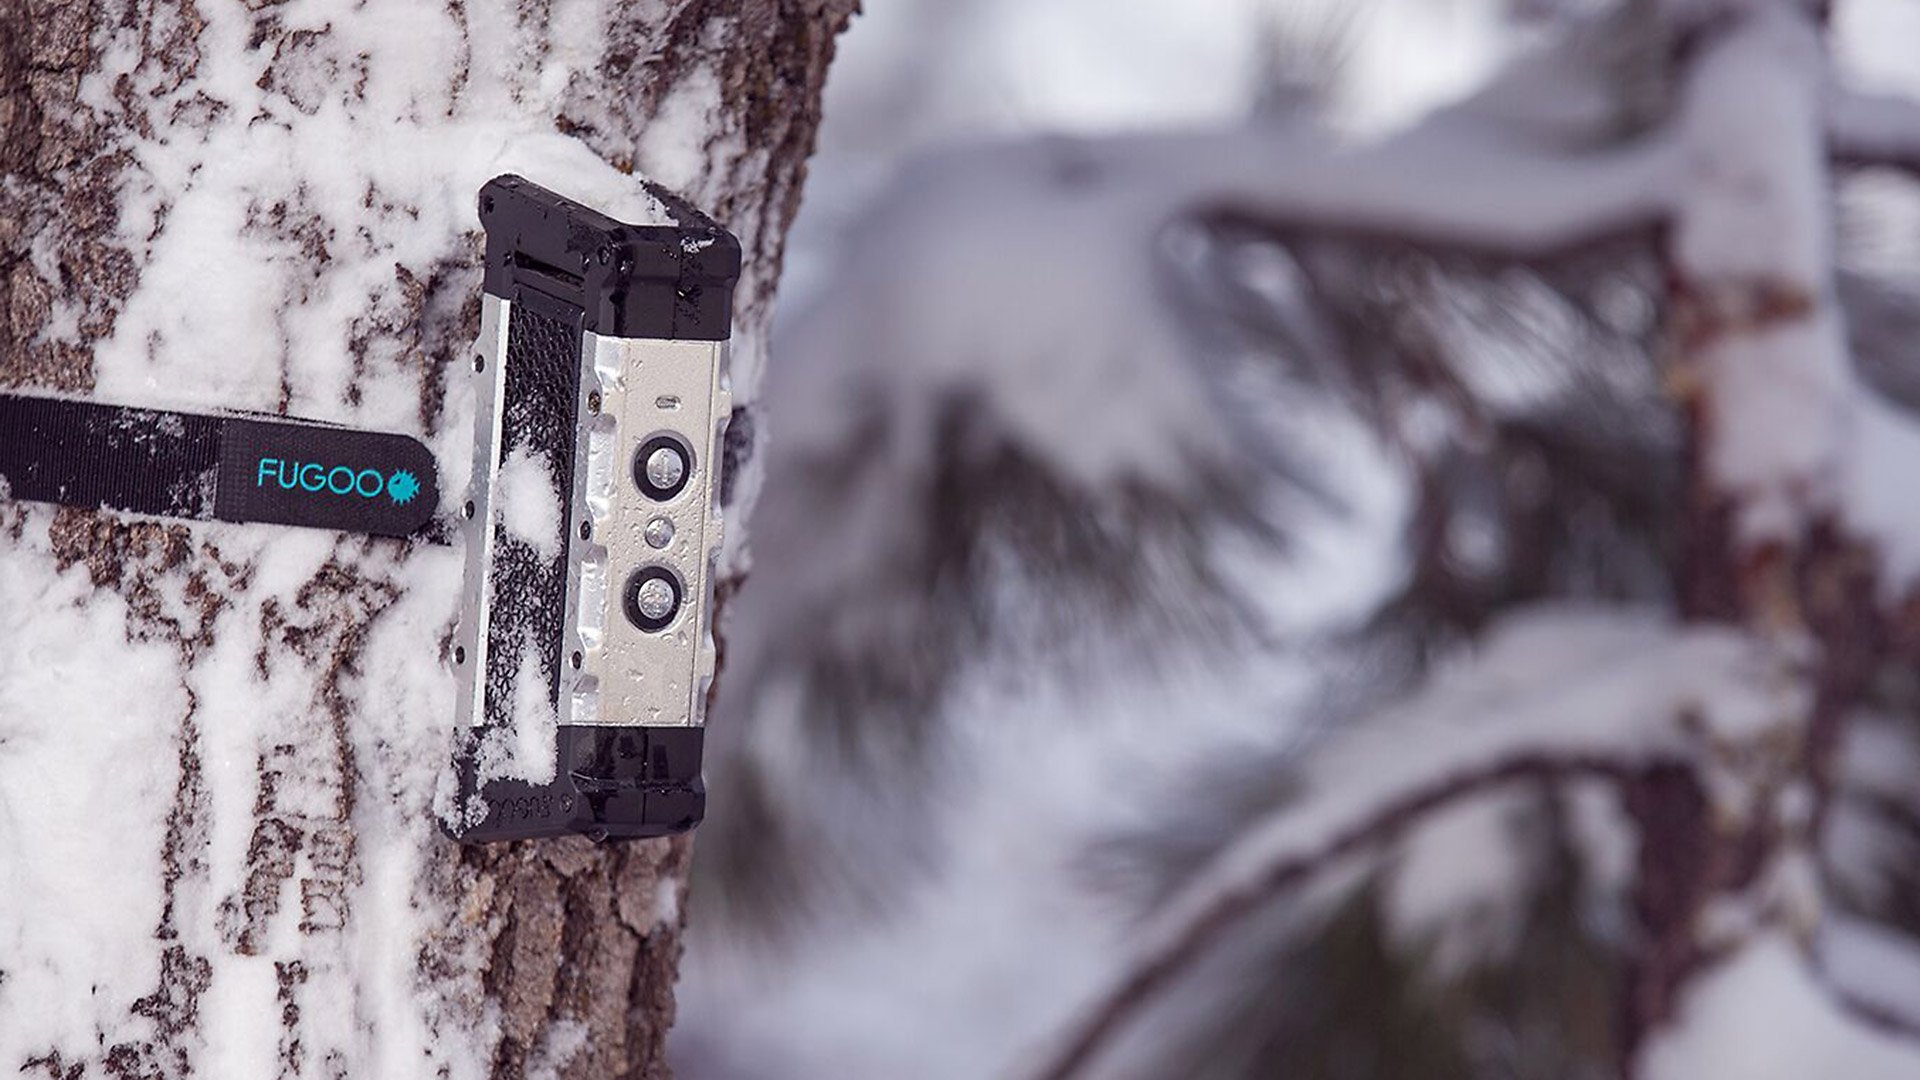 Fugoo Tough portable speaker through snow and sleet